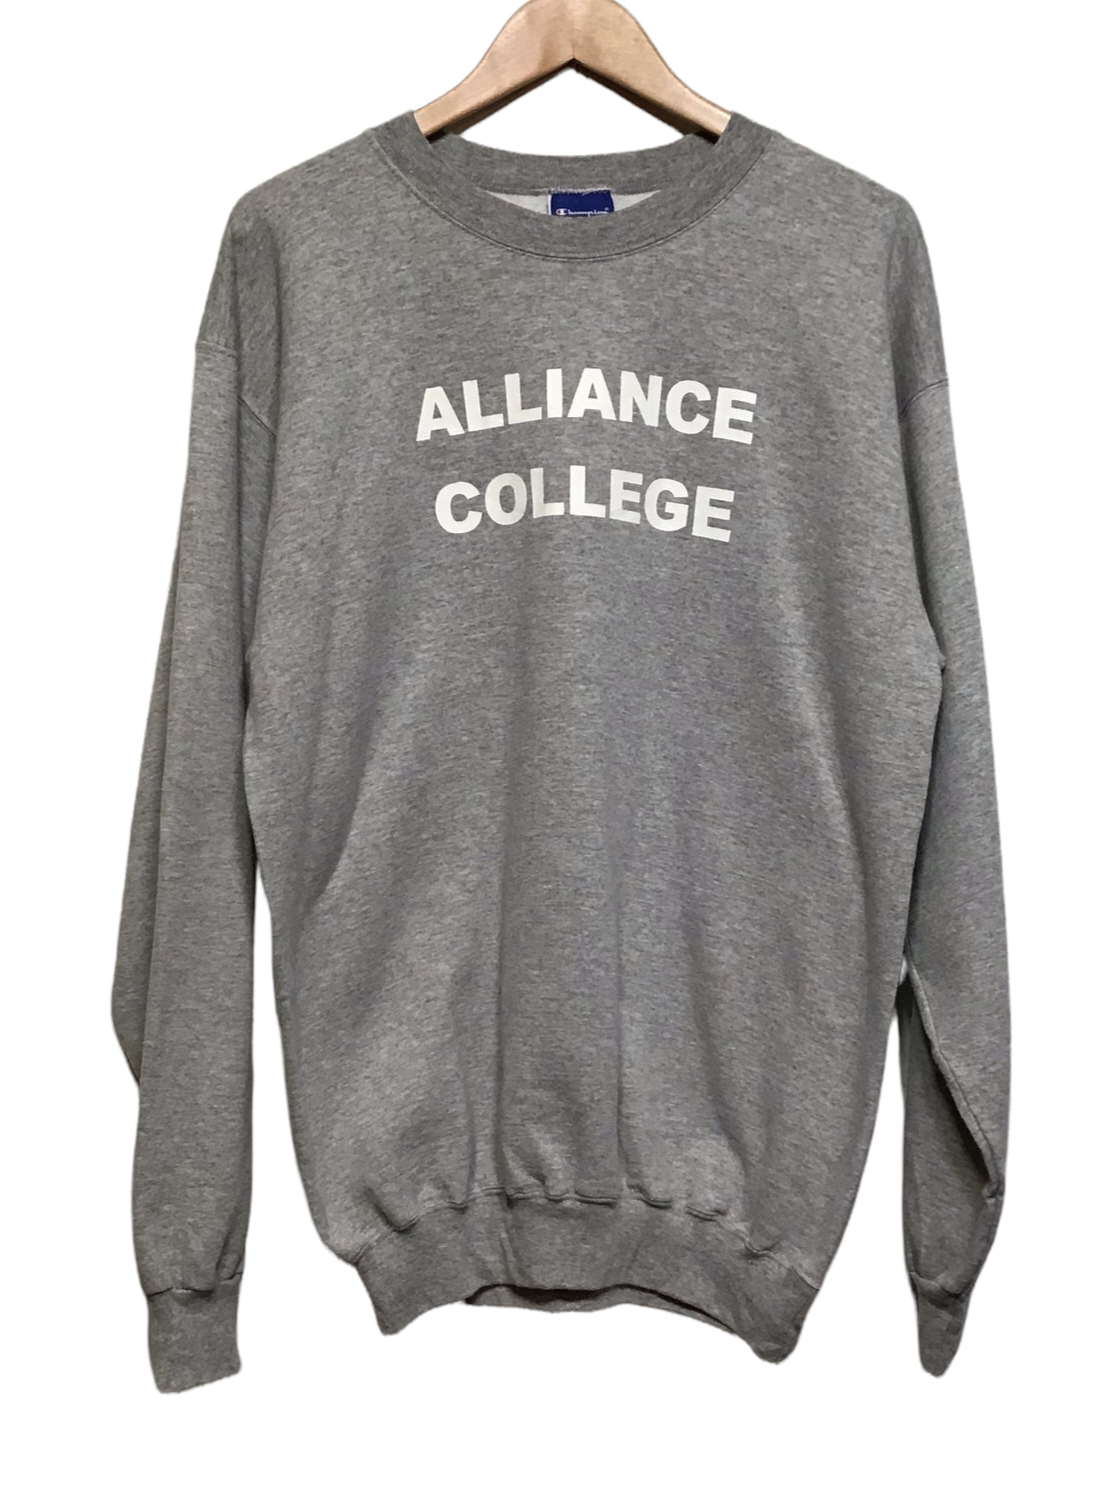 Champion ‘Alliance College’ Sweatshirt (Size L)